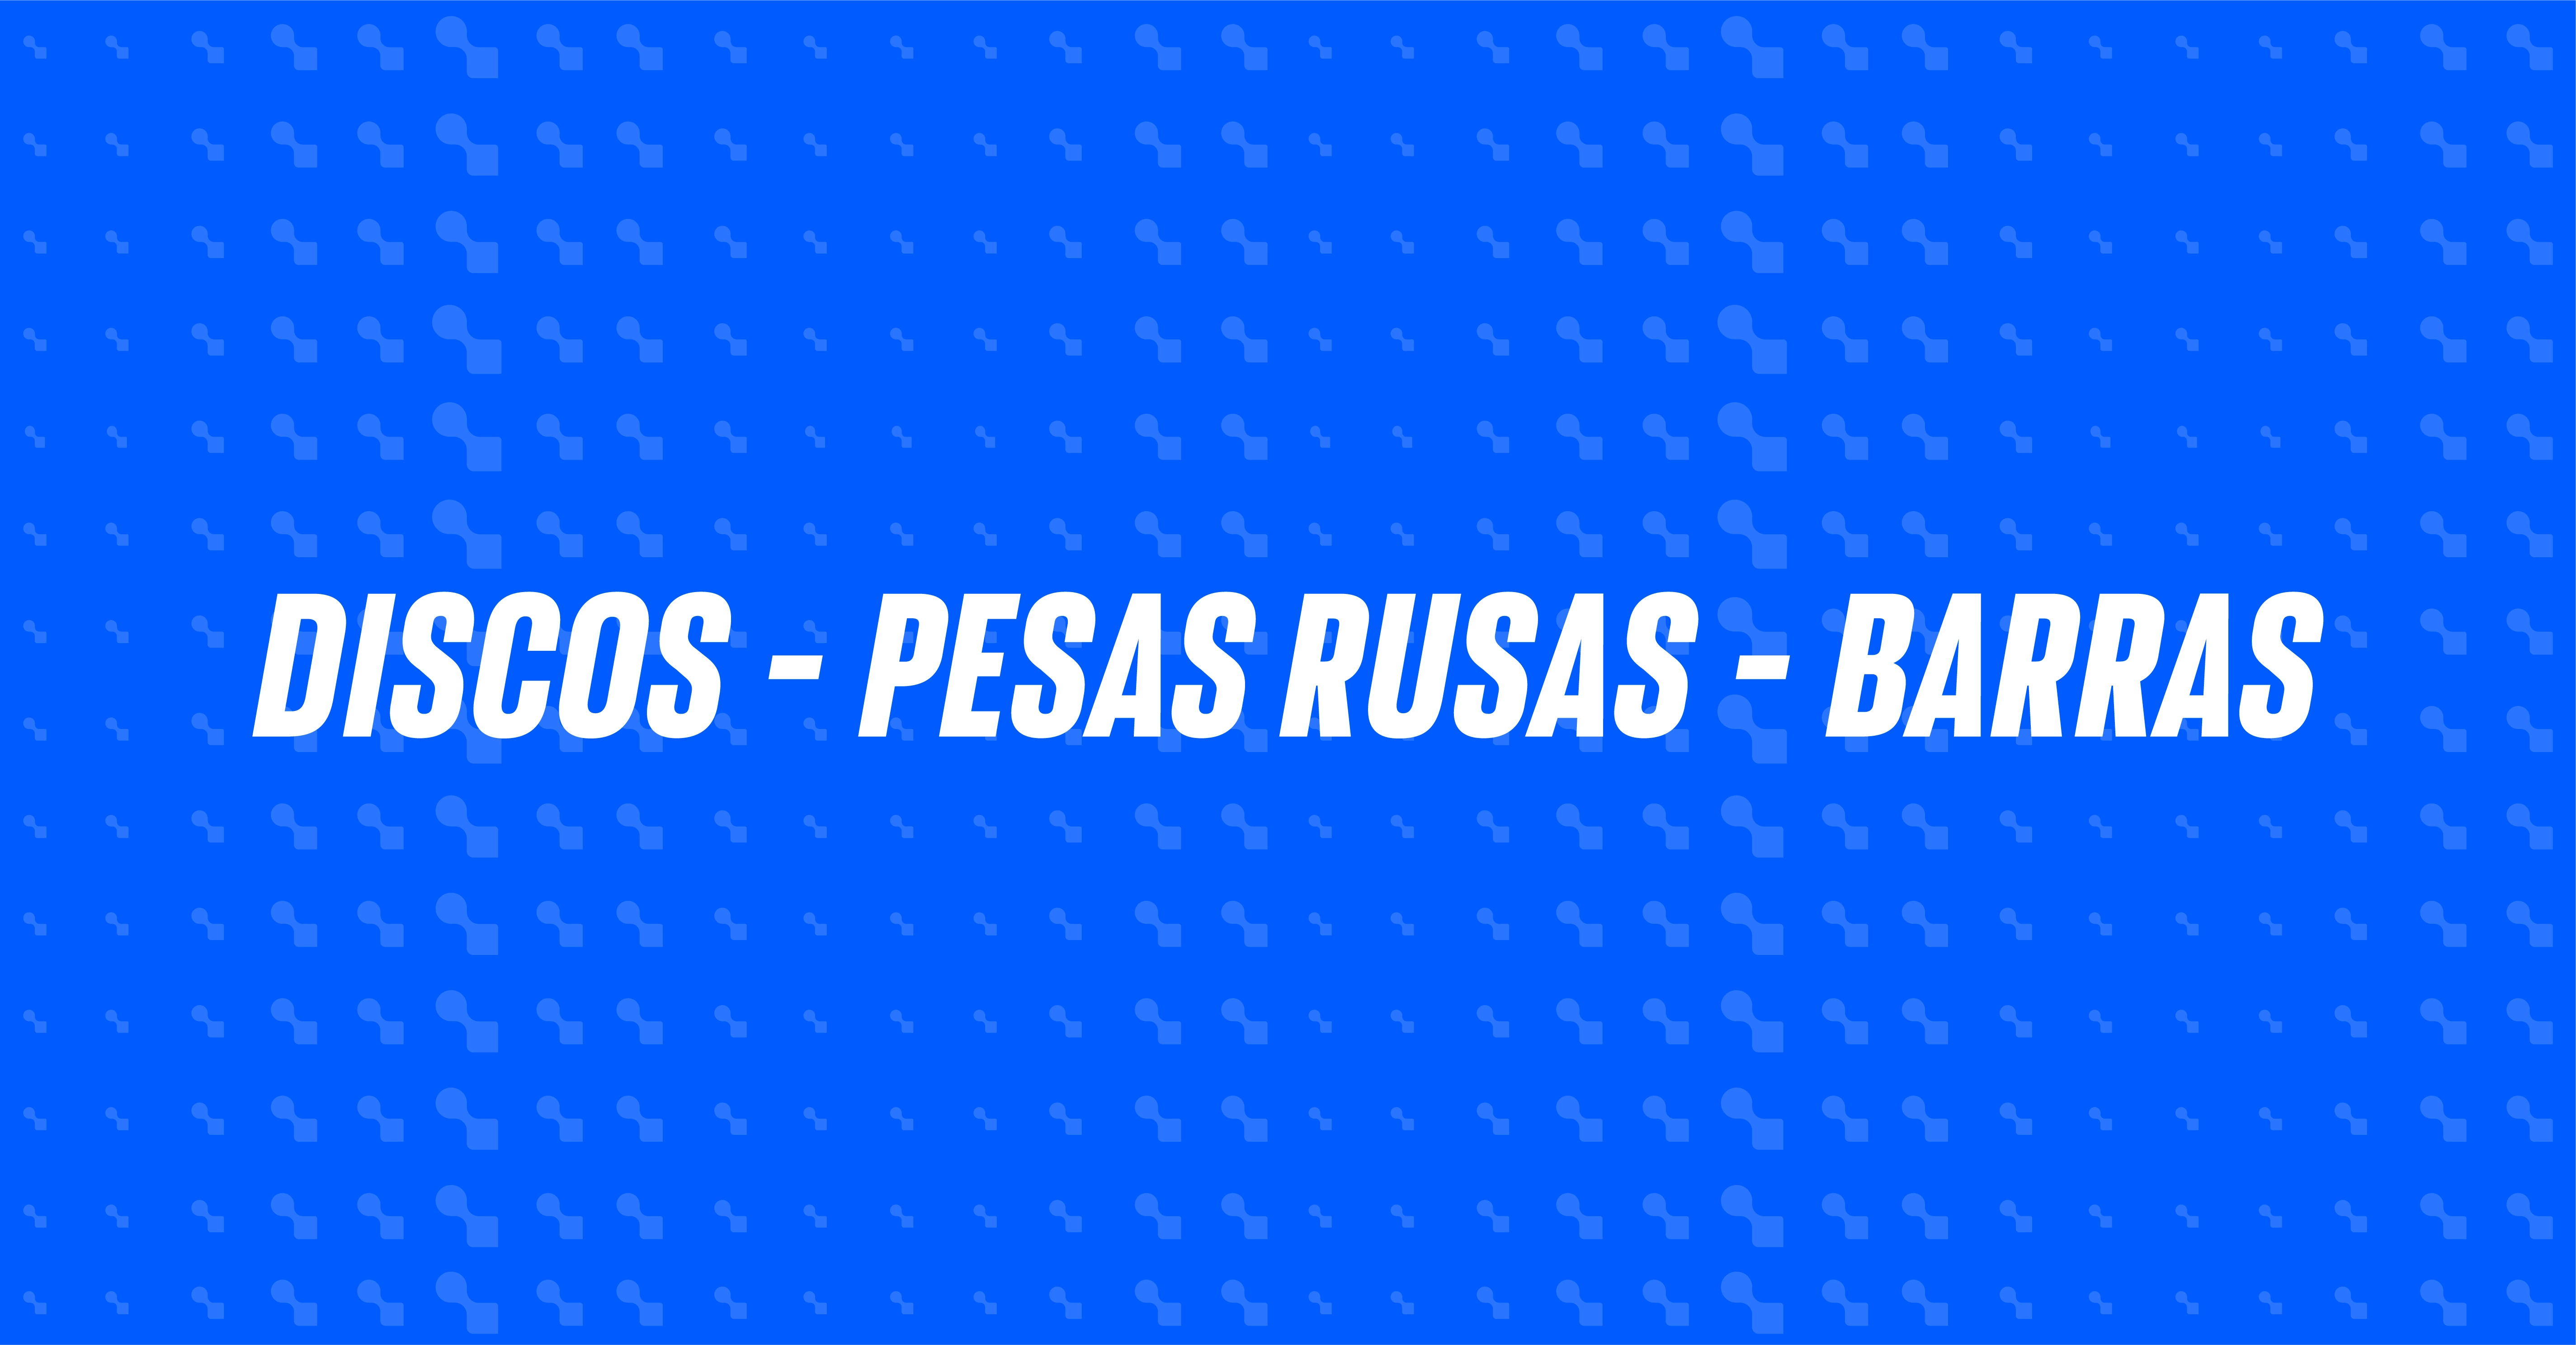 Discos - Barras & Pesas Rusas